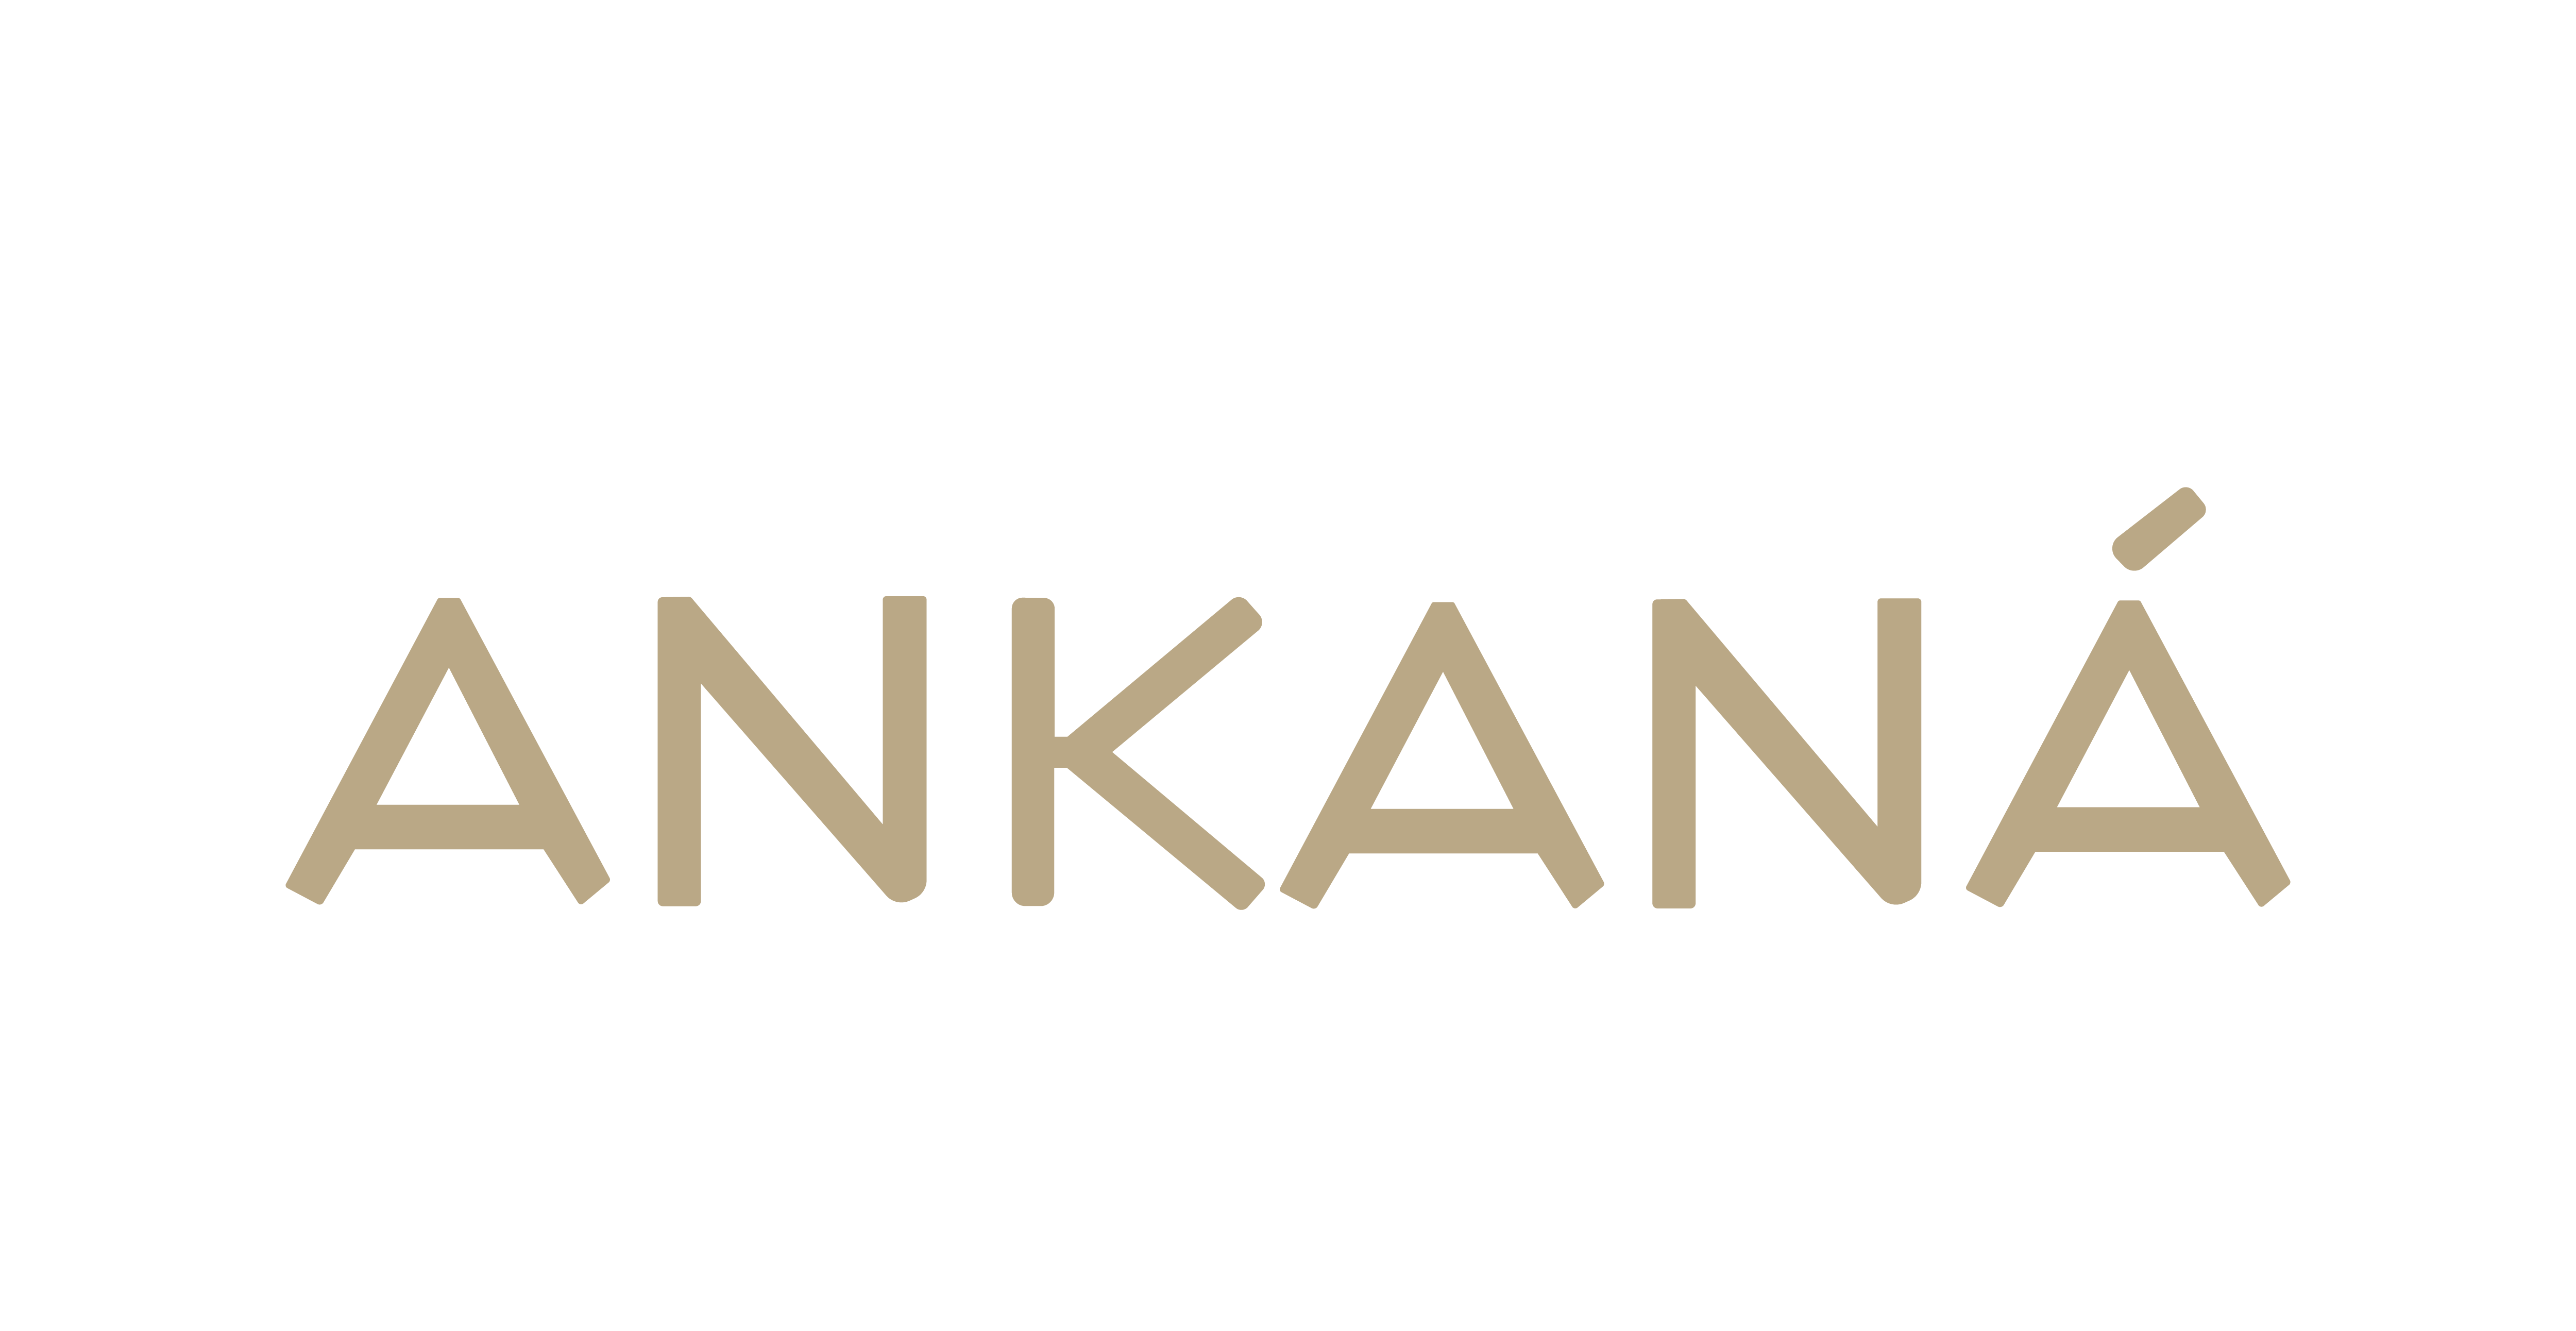 www.ankana.co